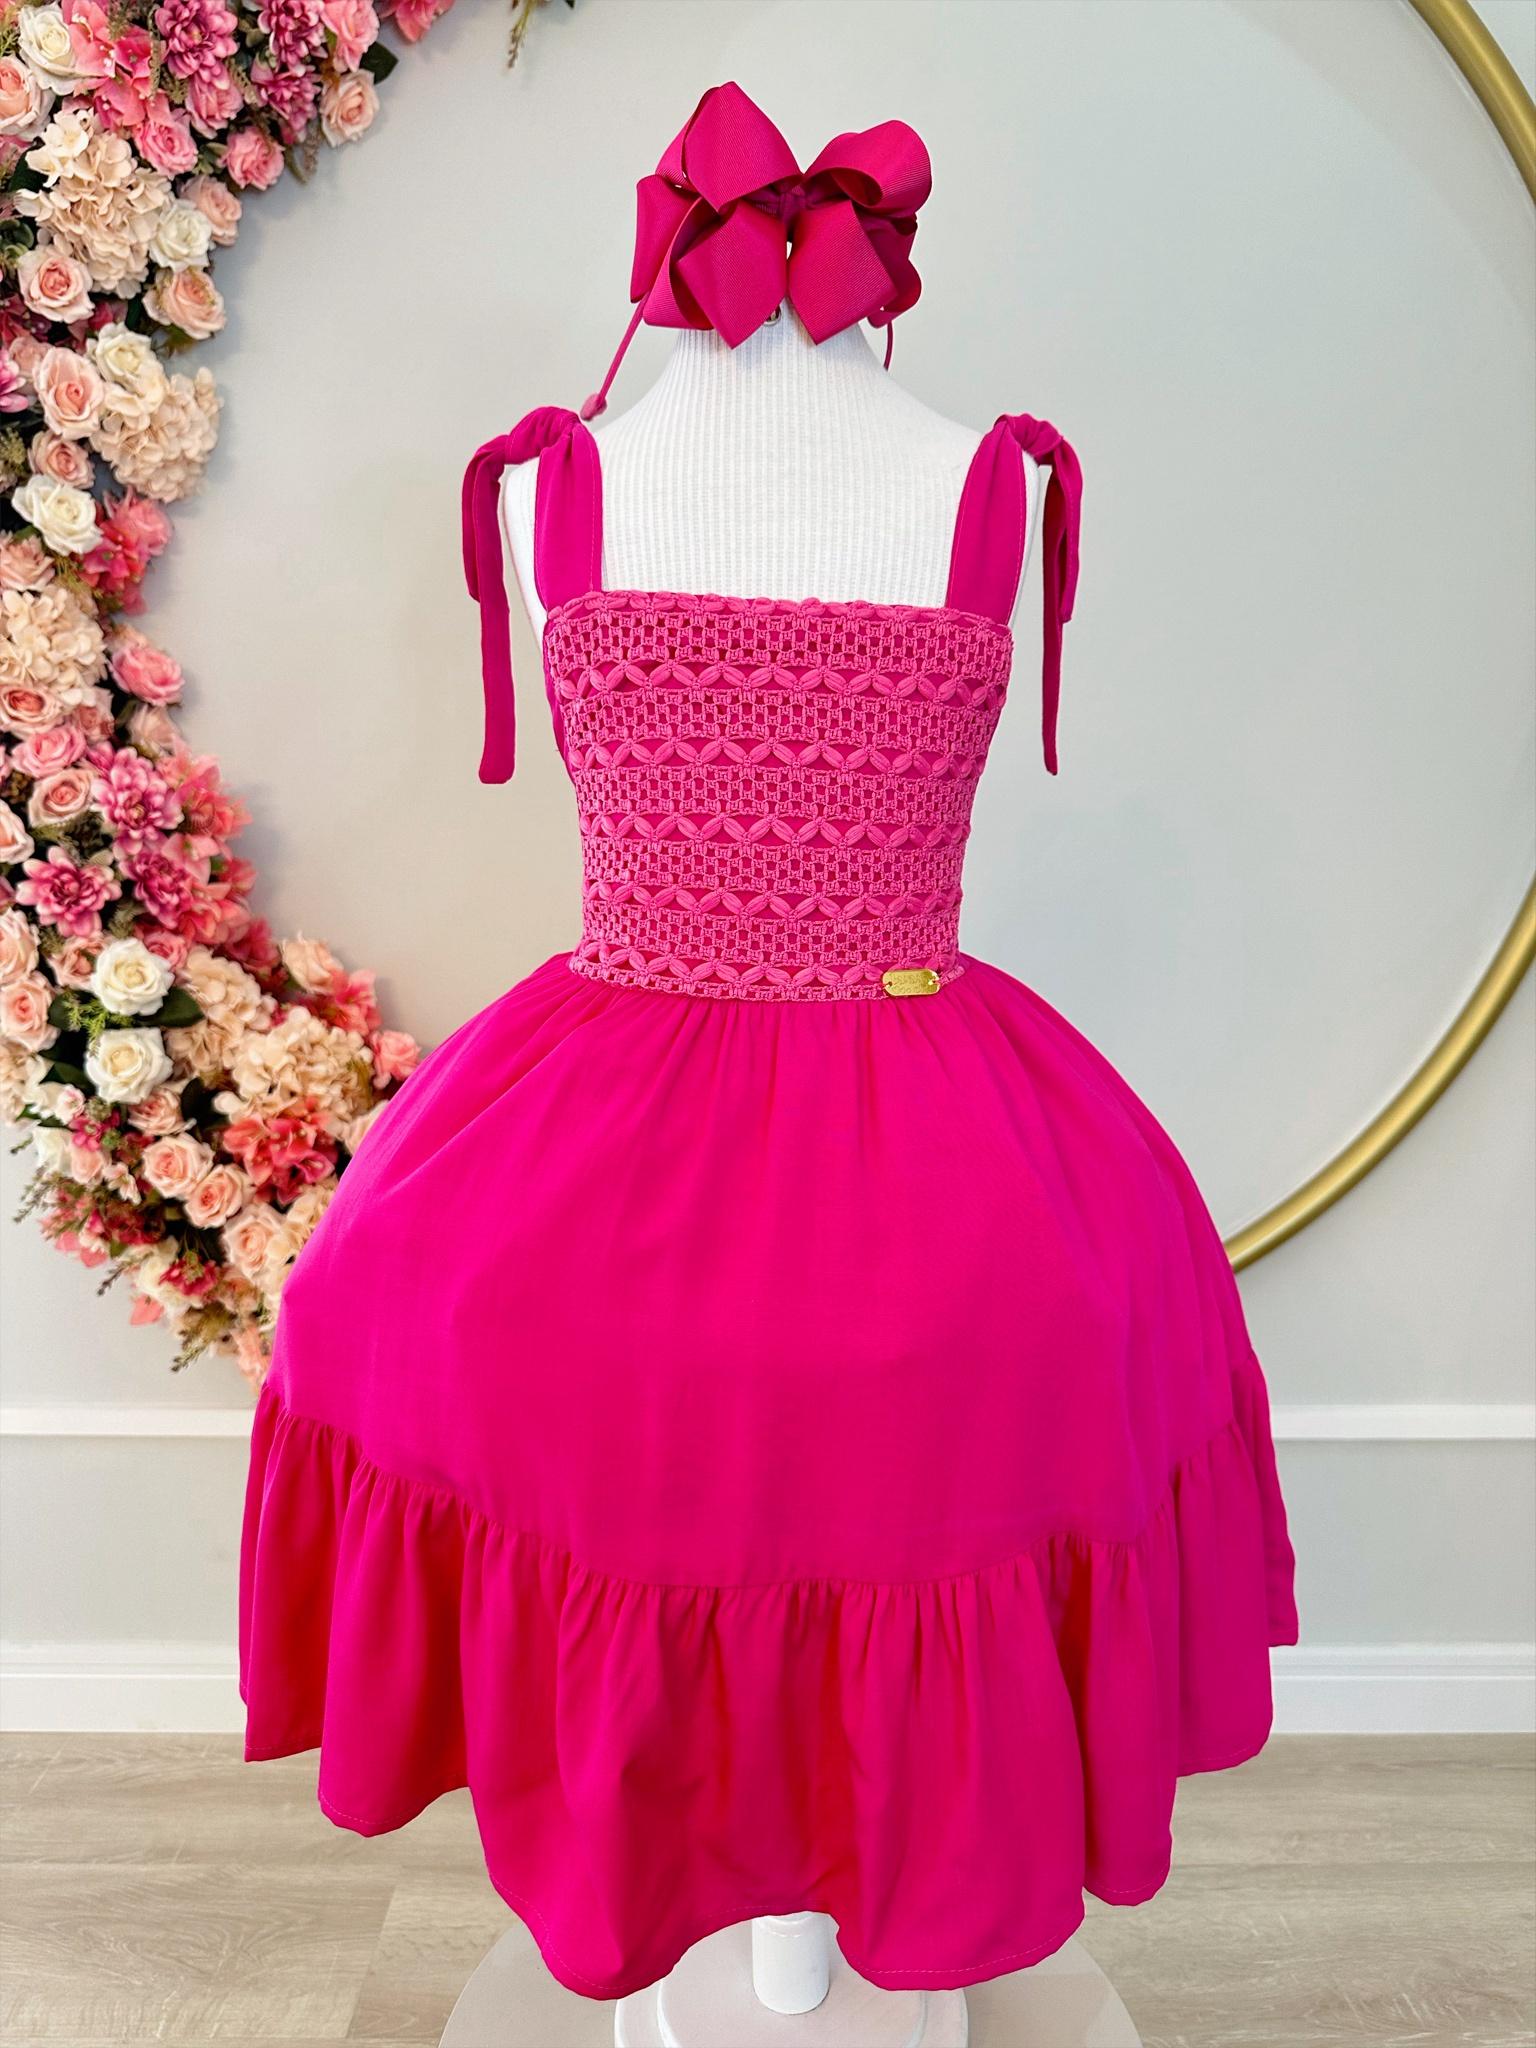 Vestido Infantil Primavera Verão Pink de Alça e Busto Bordado